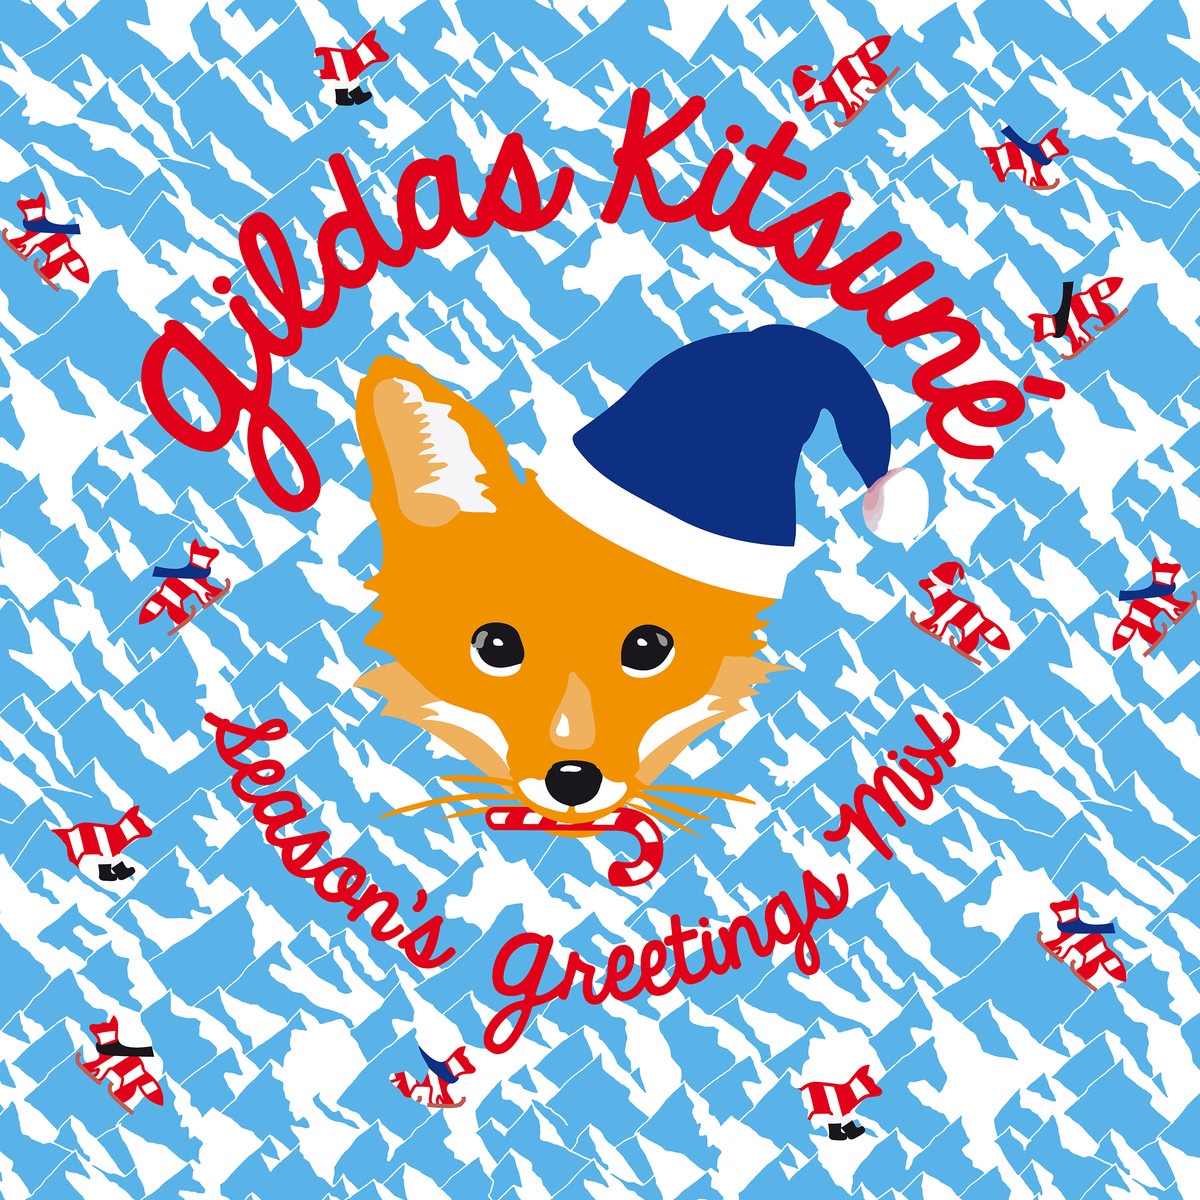 Gildas Kitsune Season' s Greetings Mix Continuous Mix